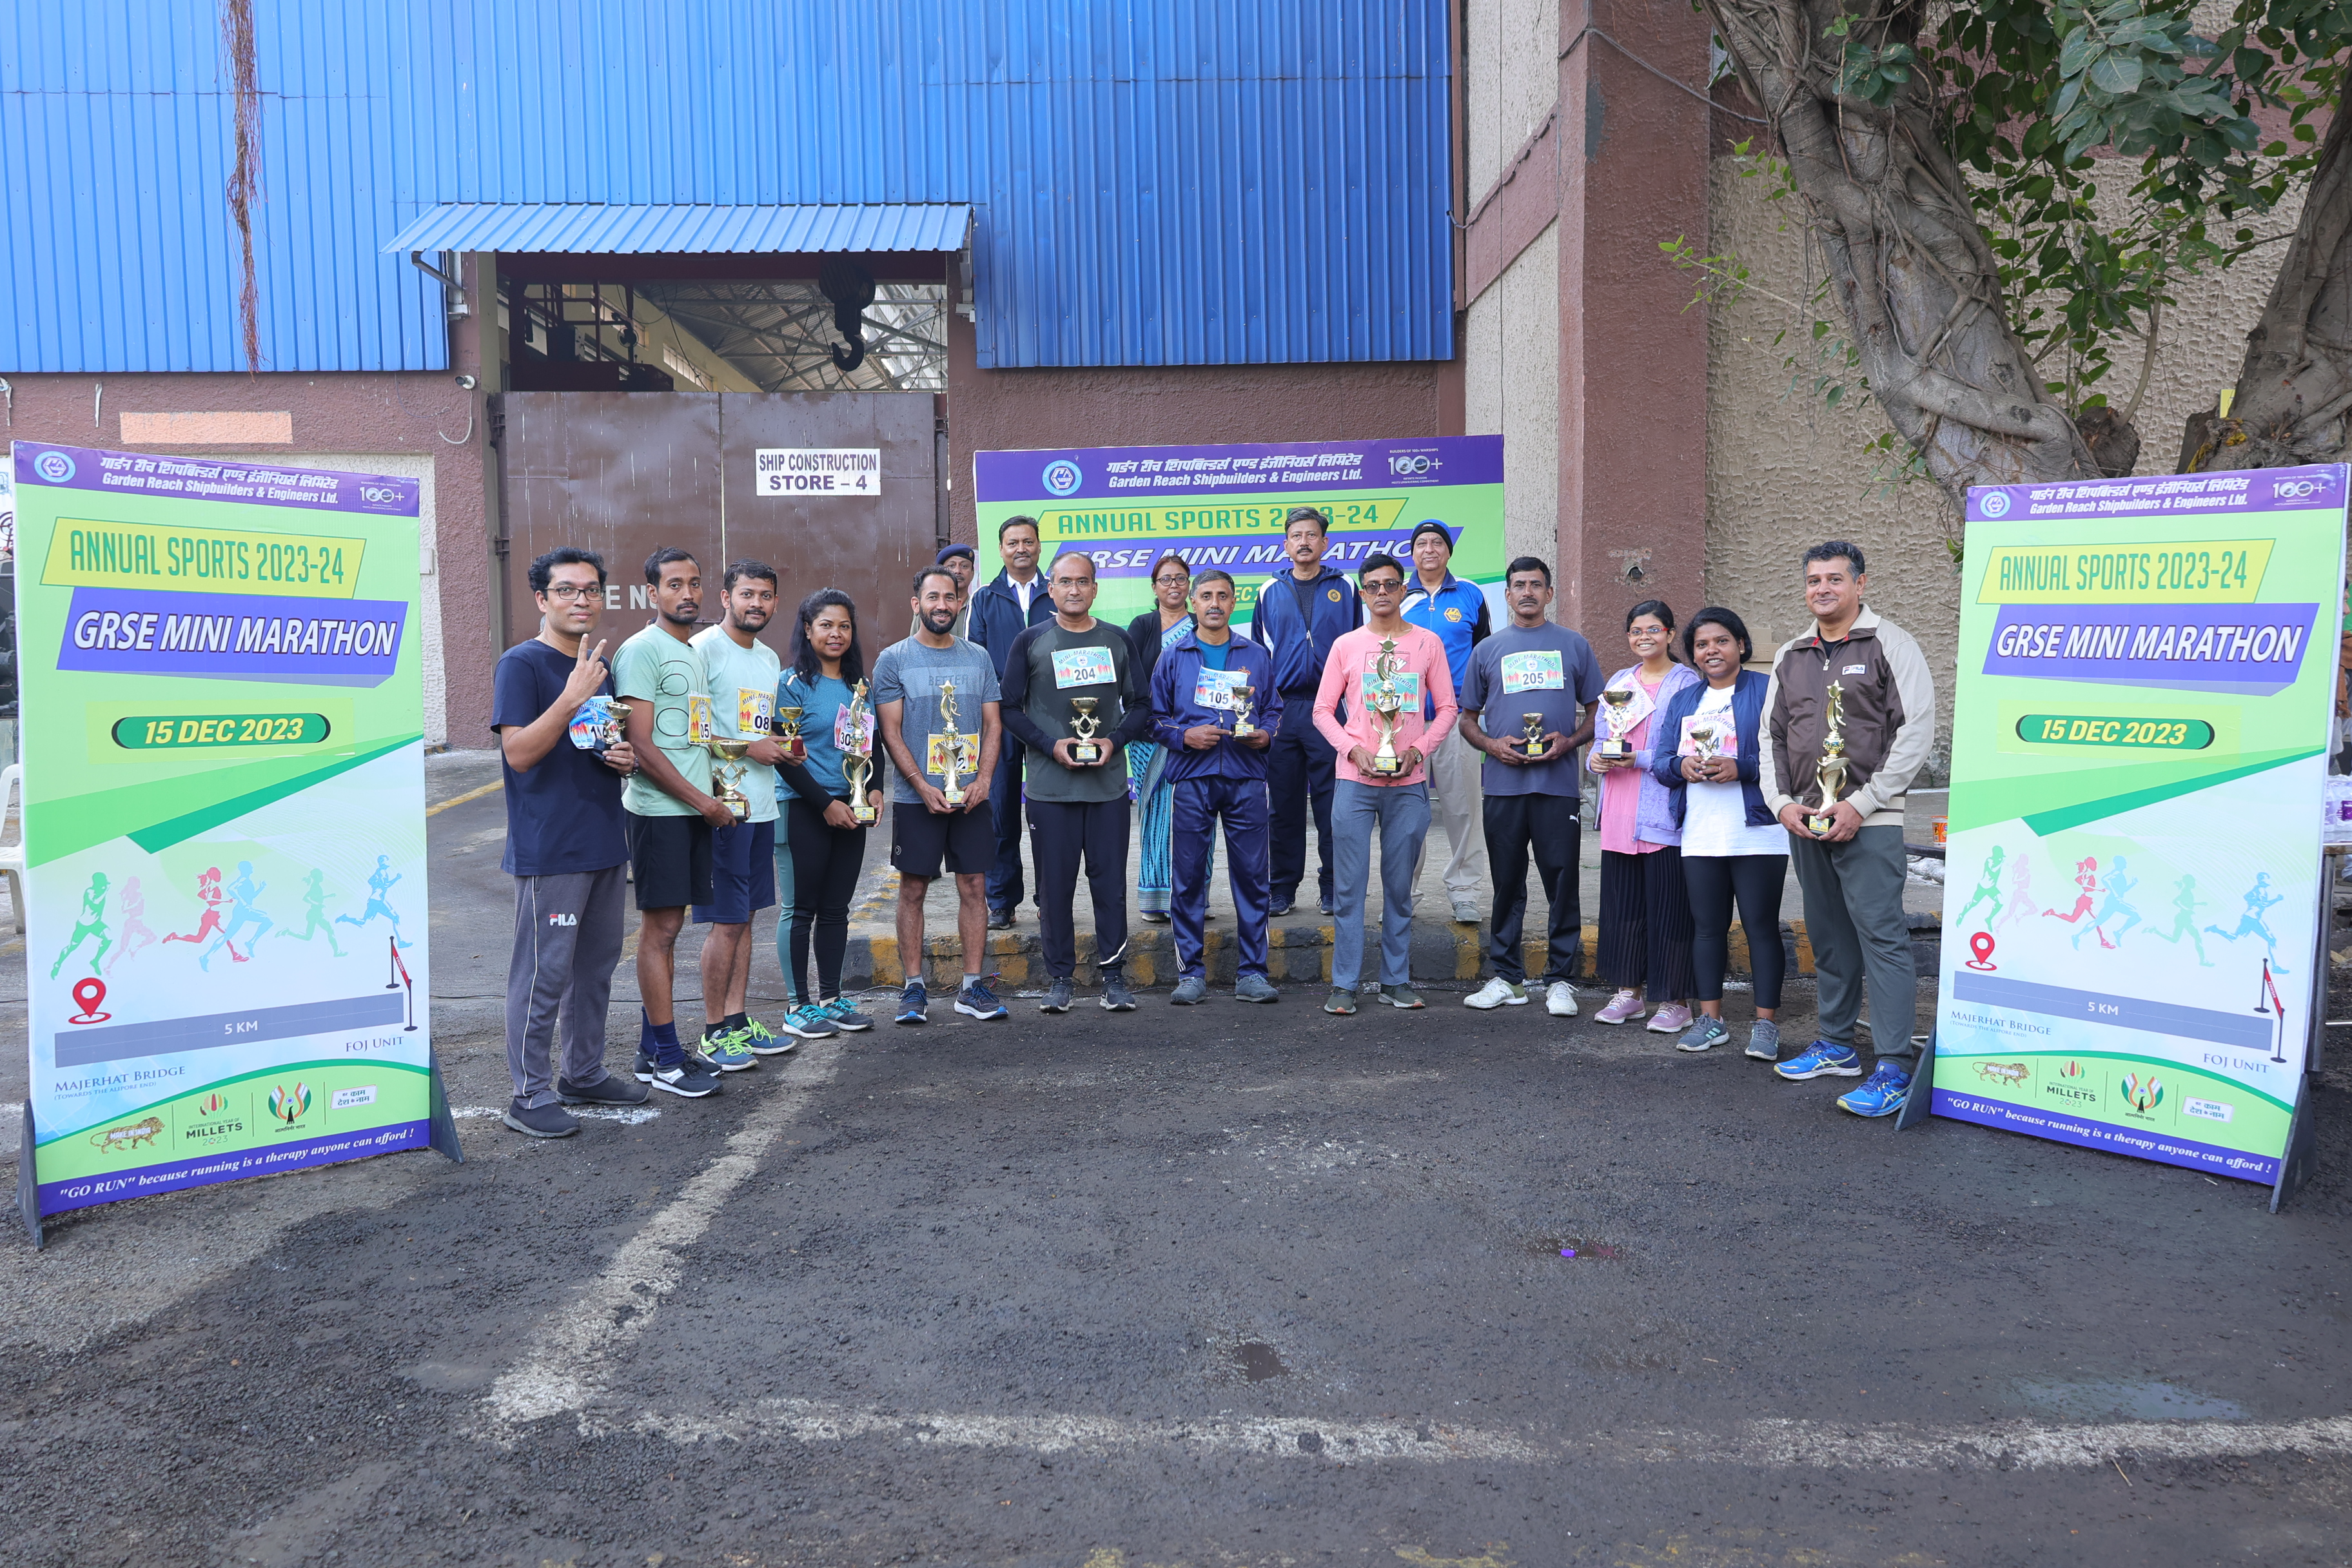 Winners of 5KM Mini Marathon on 15 Dec 23